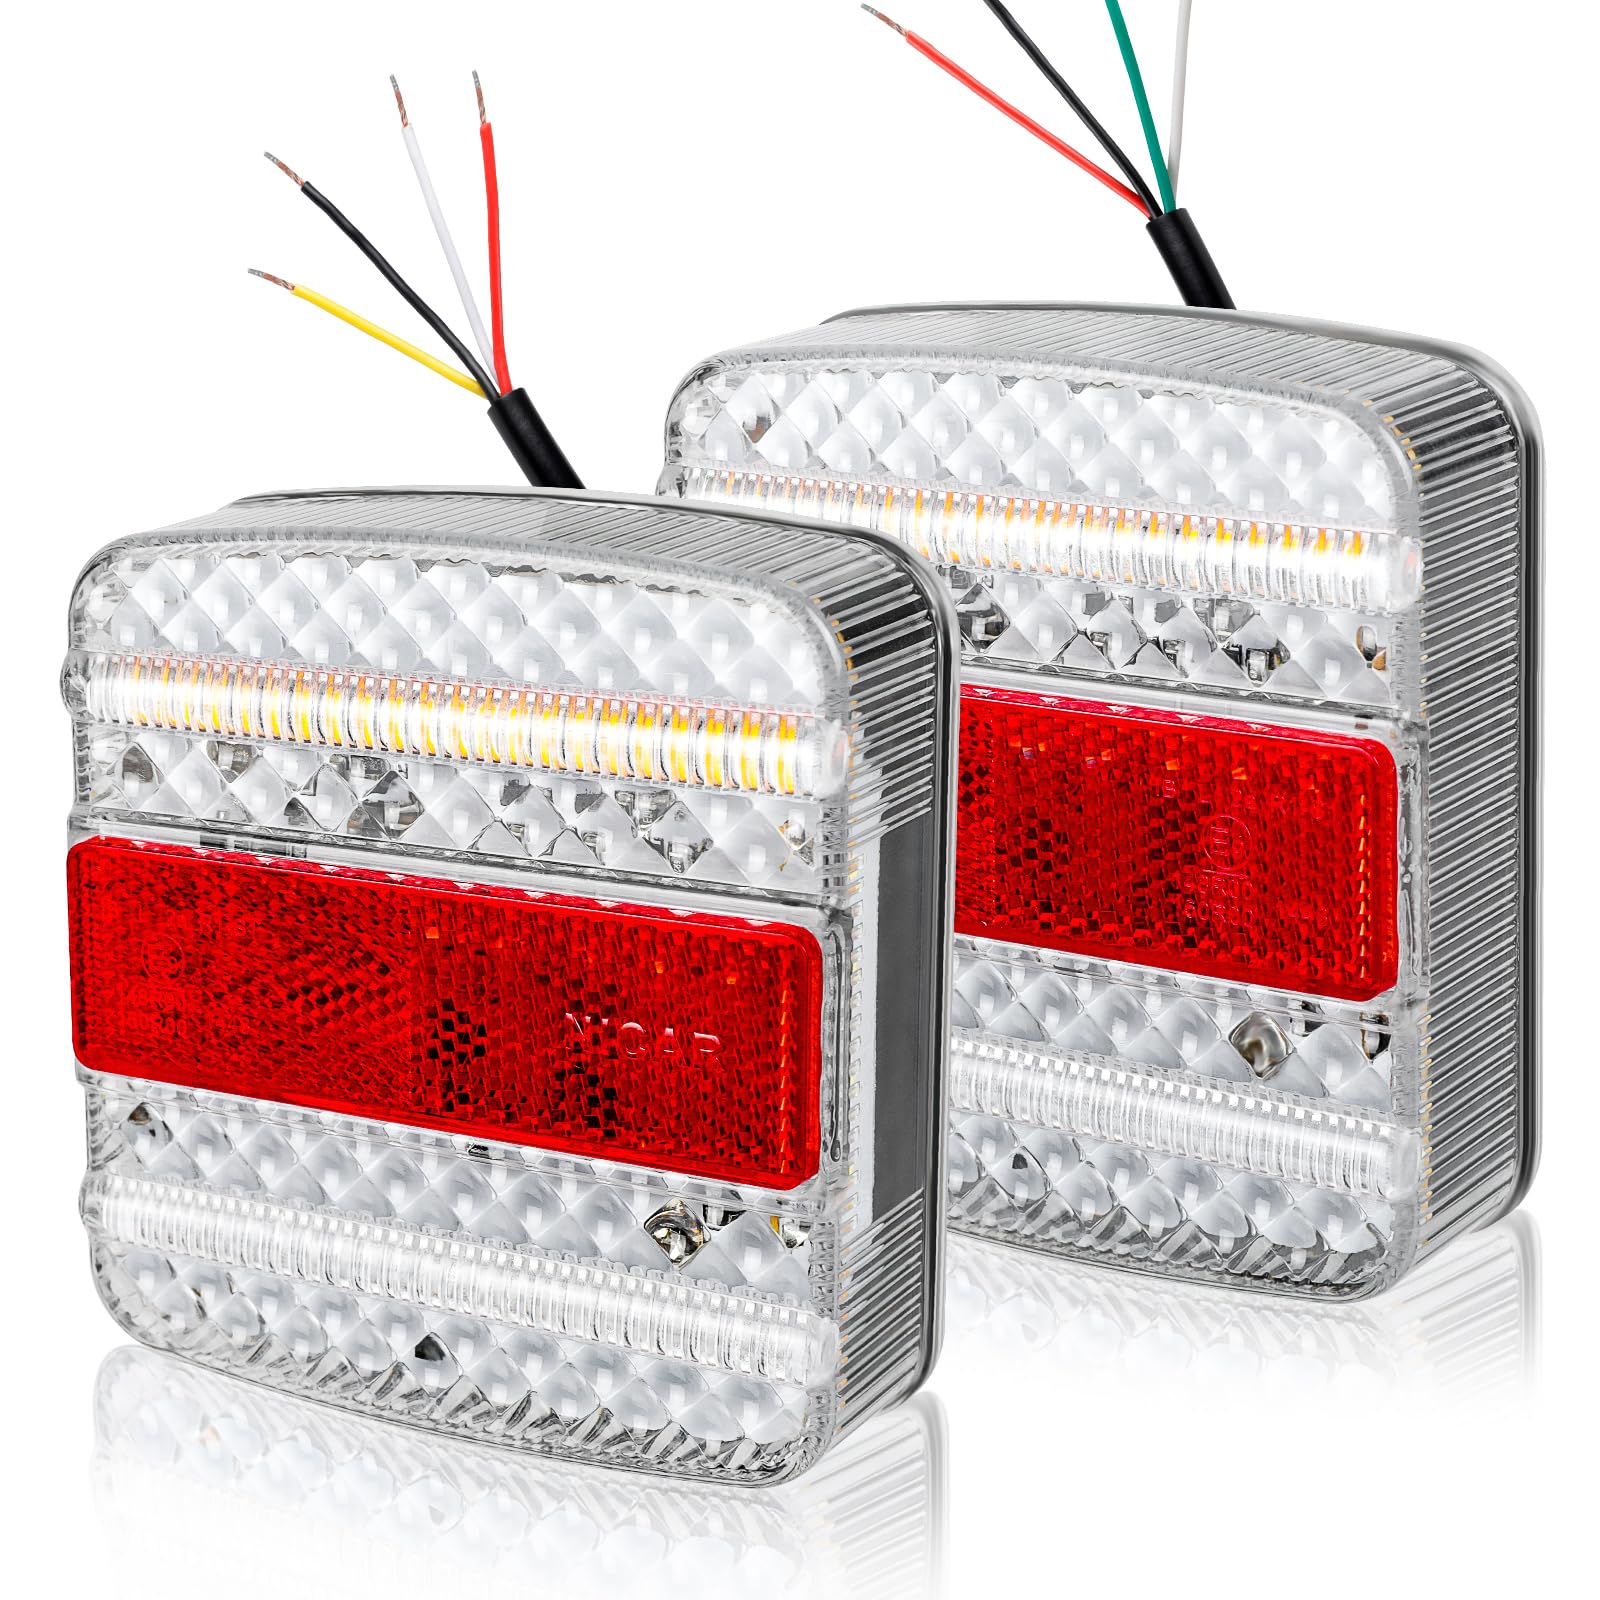 Yuanjoy 2 Stück LED Rückleuchten Satz für Anhänger 12 V 24V - 5 Funktion - Integriert Bremslichter, Blinker, Positionslichter, Kennzeichenbeleuchtung, Reflektor von Yuanjoy